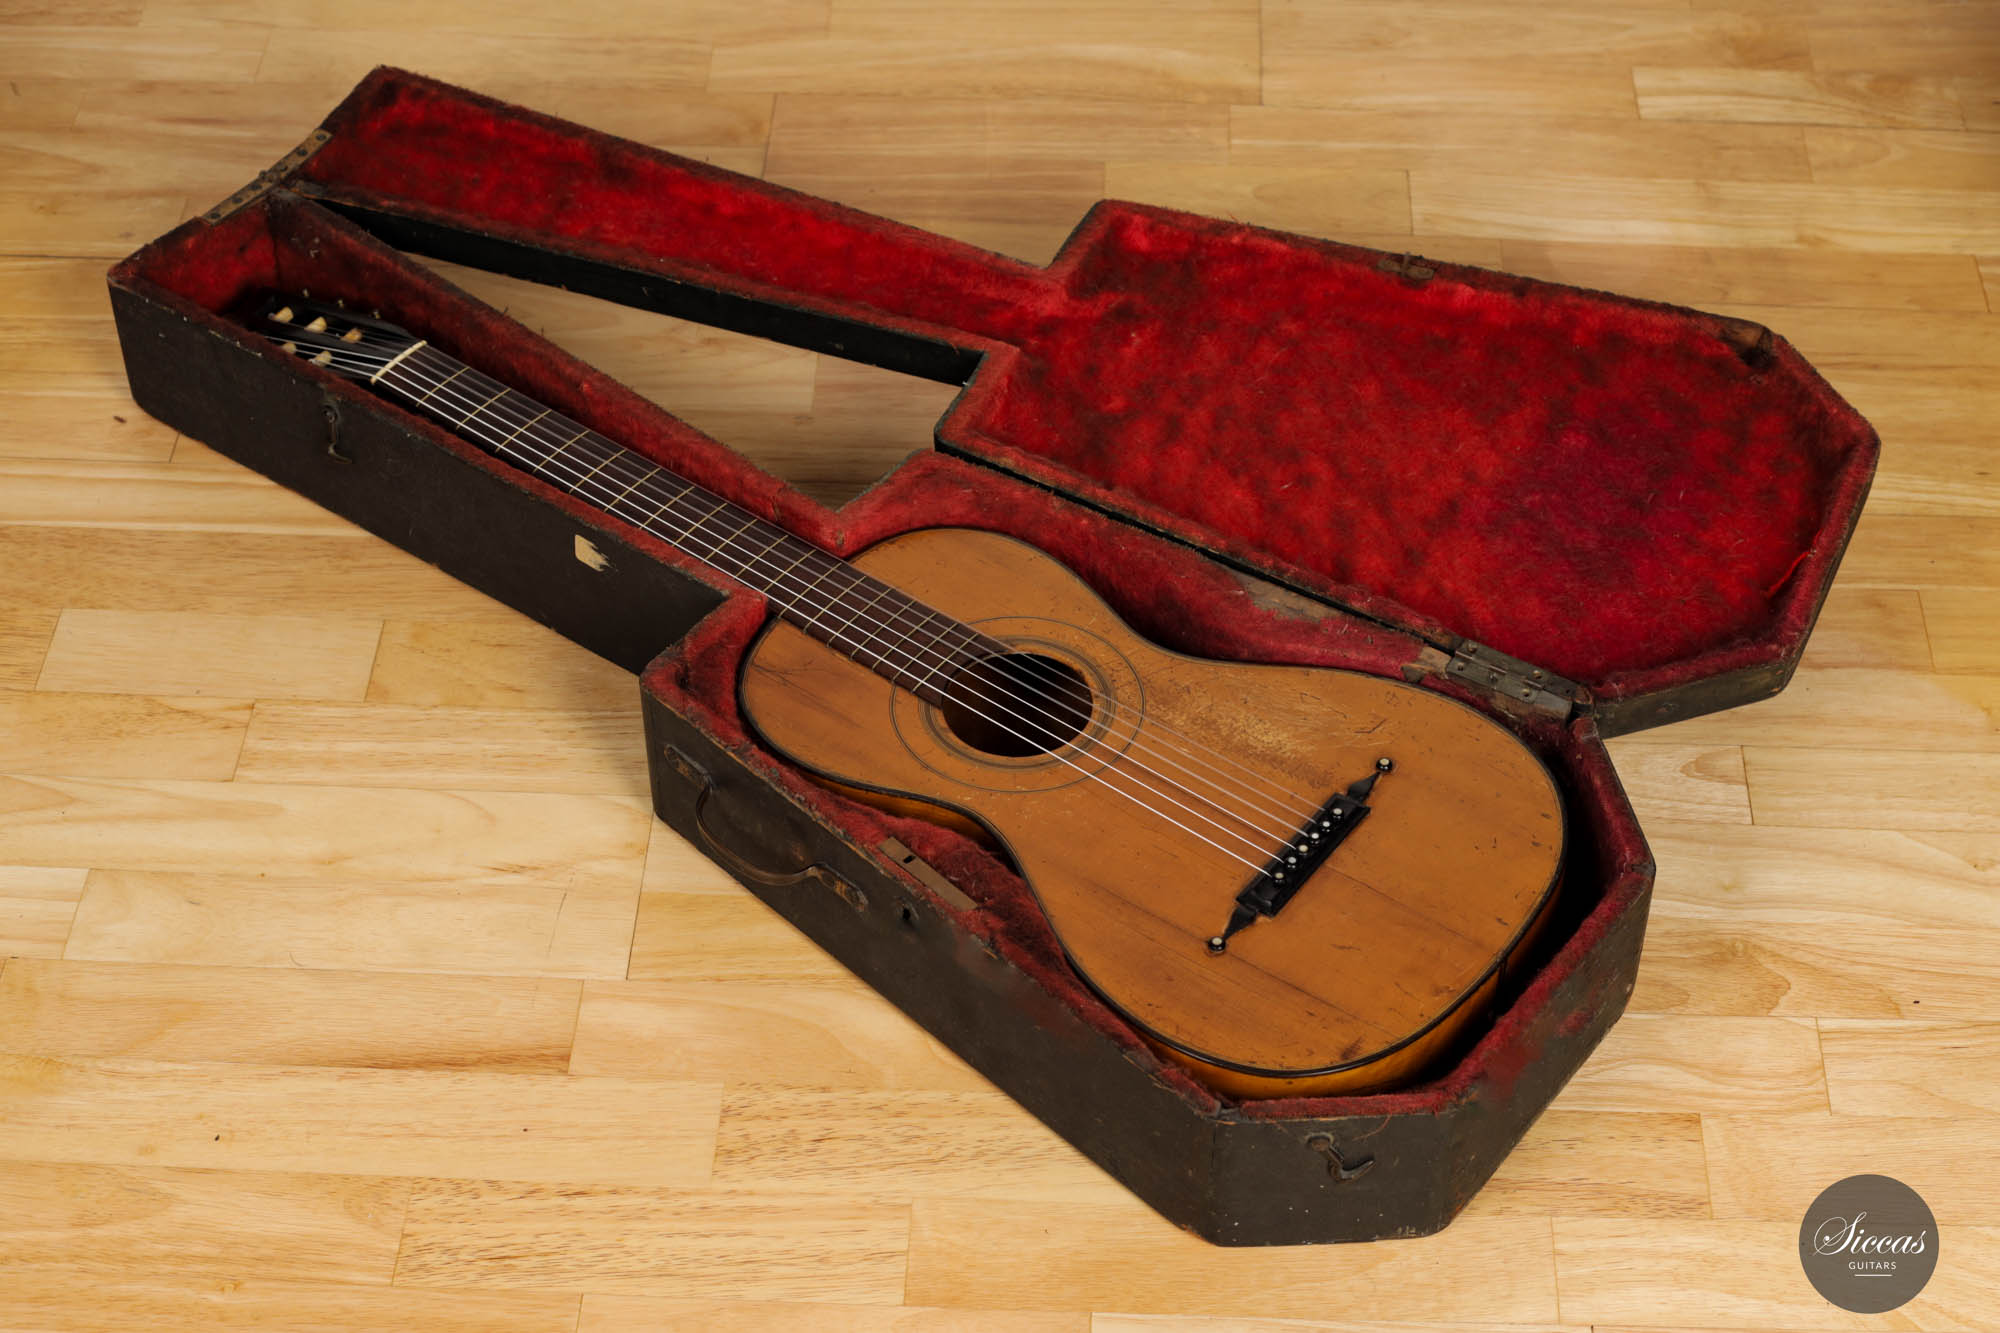 ルイ・パノルモ作 オリジナル19世紀ギター（ロンドン、1830年頃） - ギター